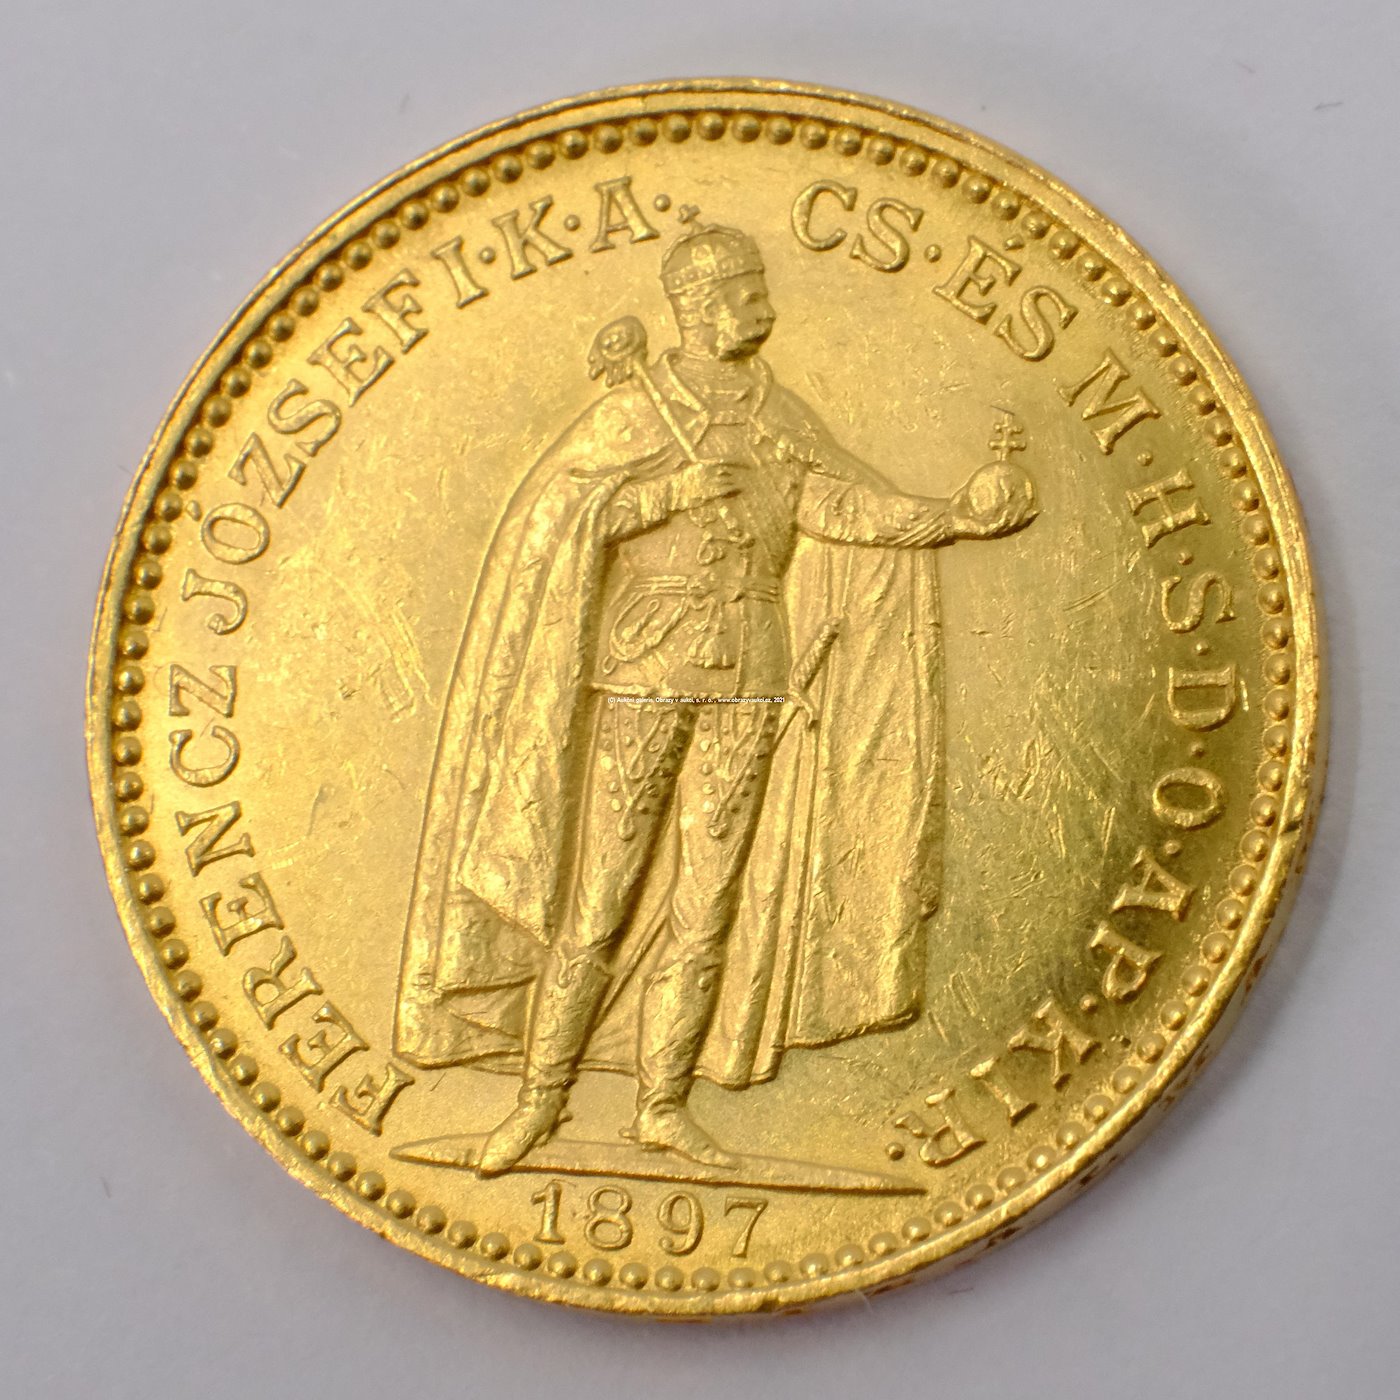 .. - Rakousko Uhersko zlatá 20 Koruna 1897 uherská. Zlato 900/1000, hrubá hmotnost mince 6,78g